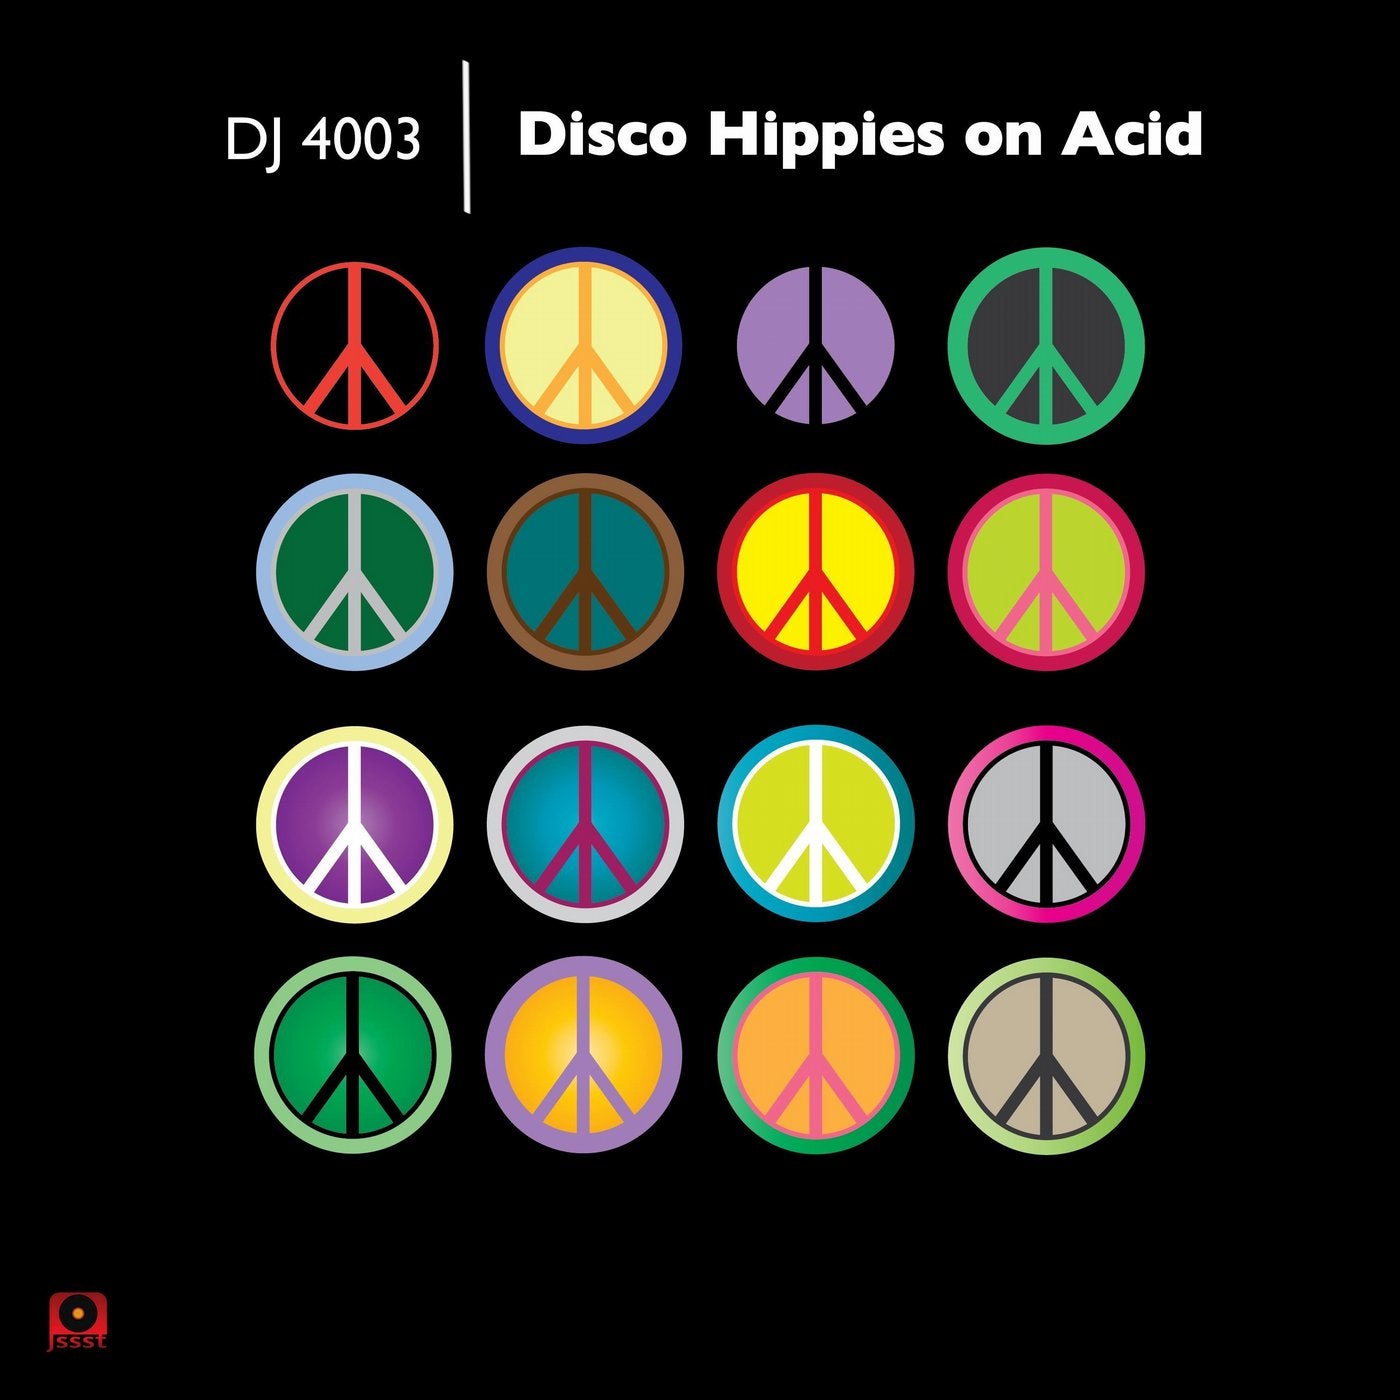 Disco Hippies on Acid